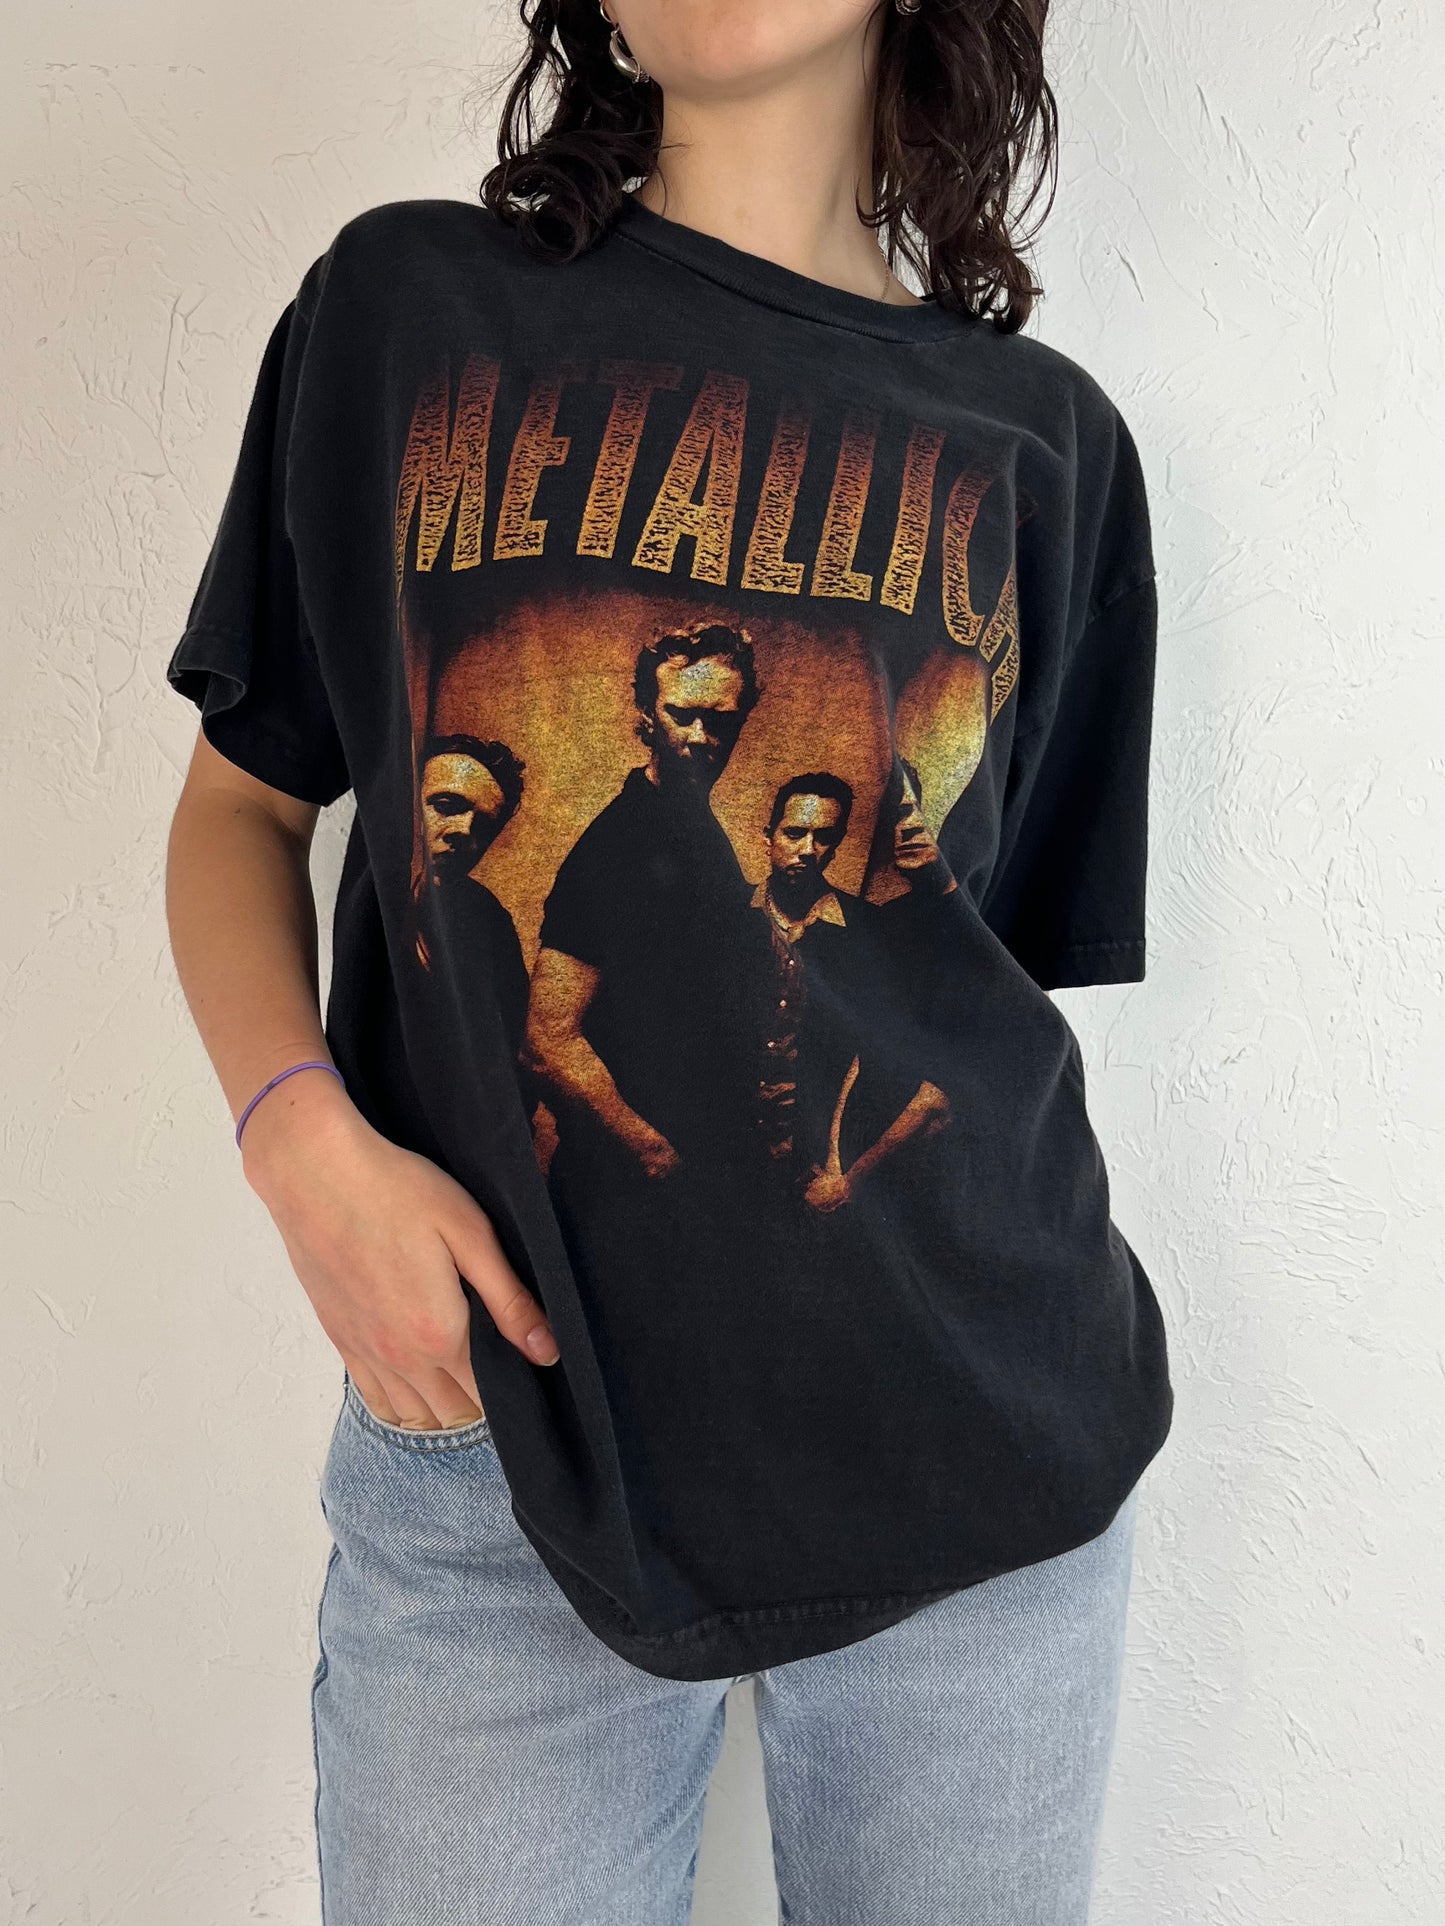 Vintage 1999 Metallica Tour T Shirt / Large